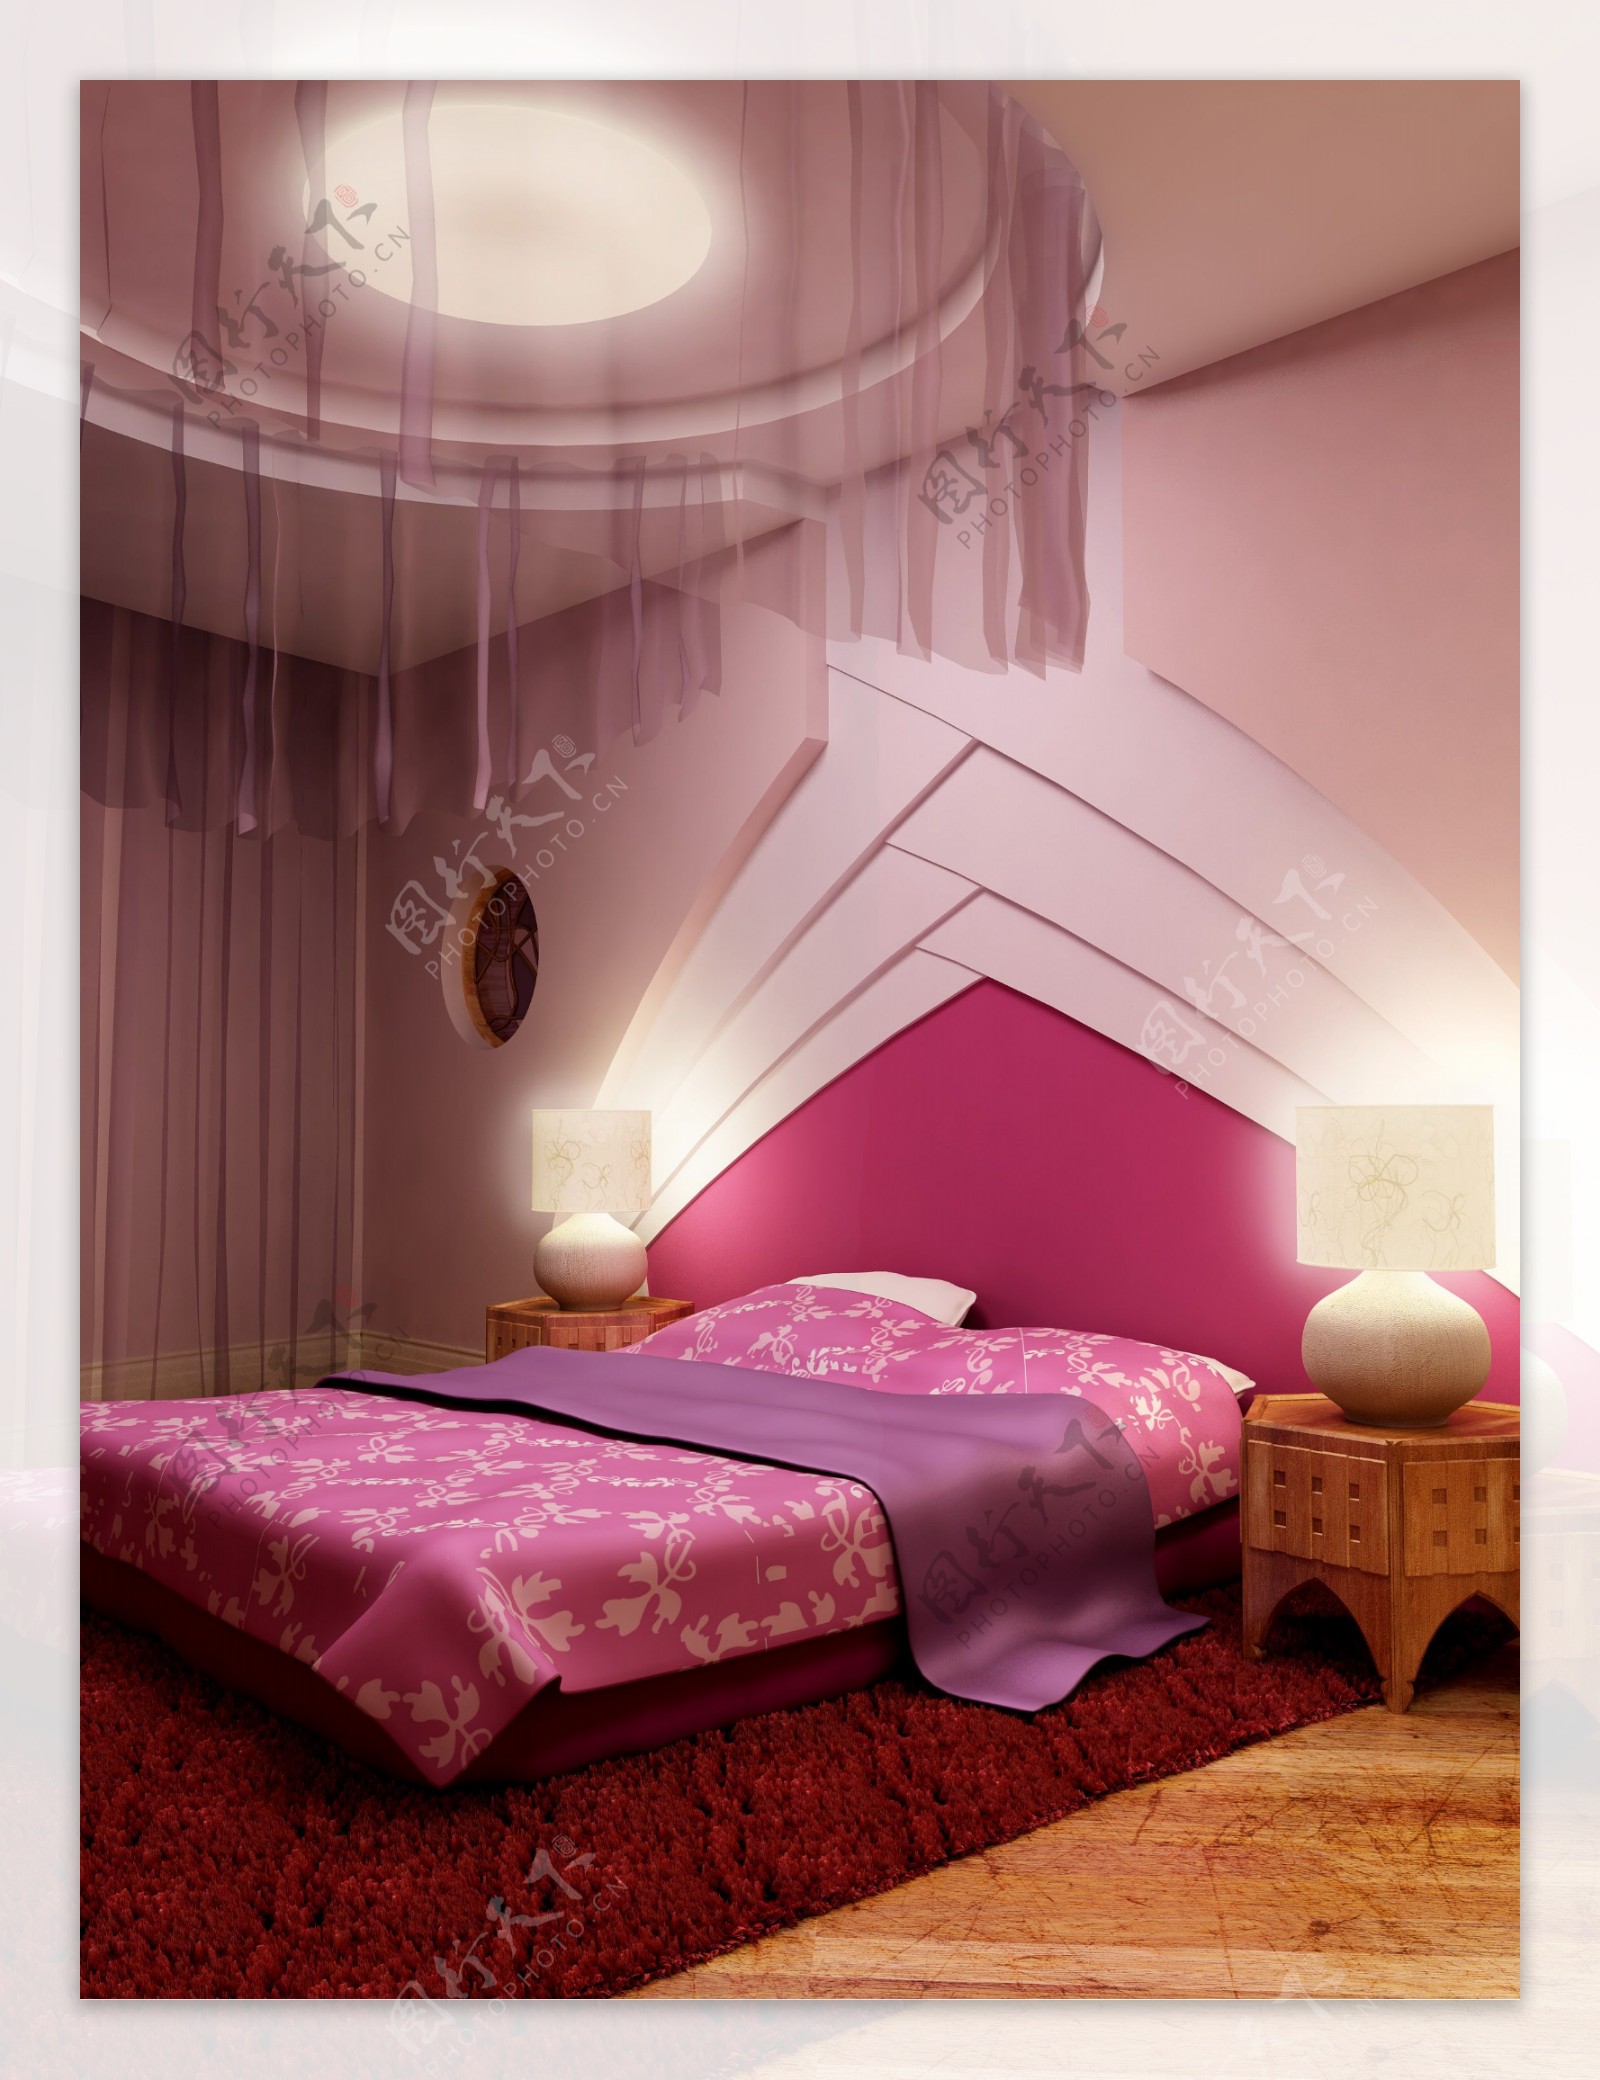 紫色调子的温馨房间